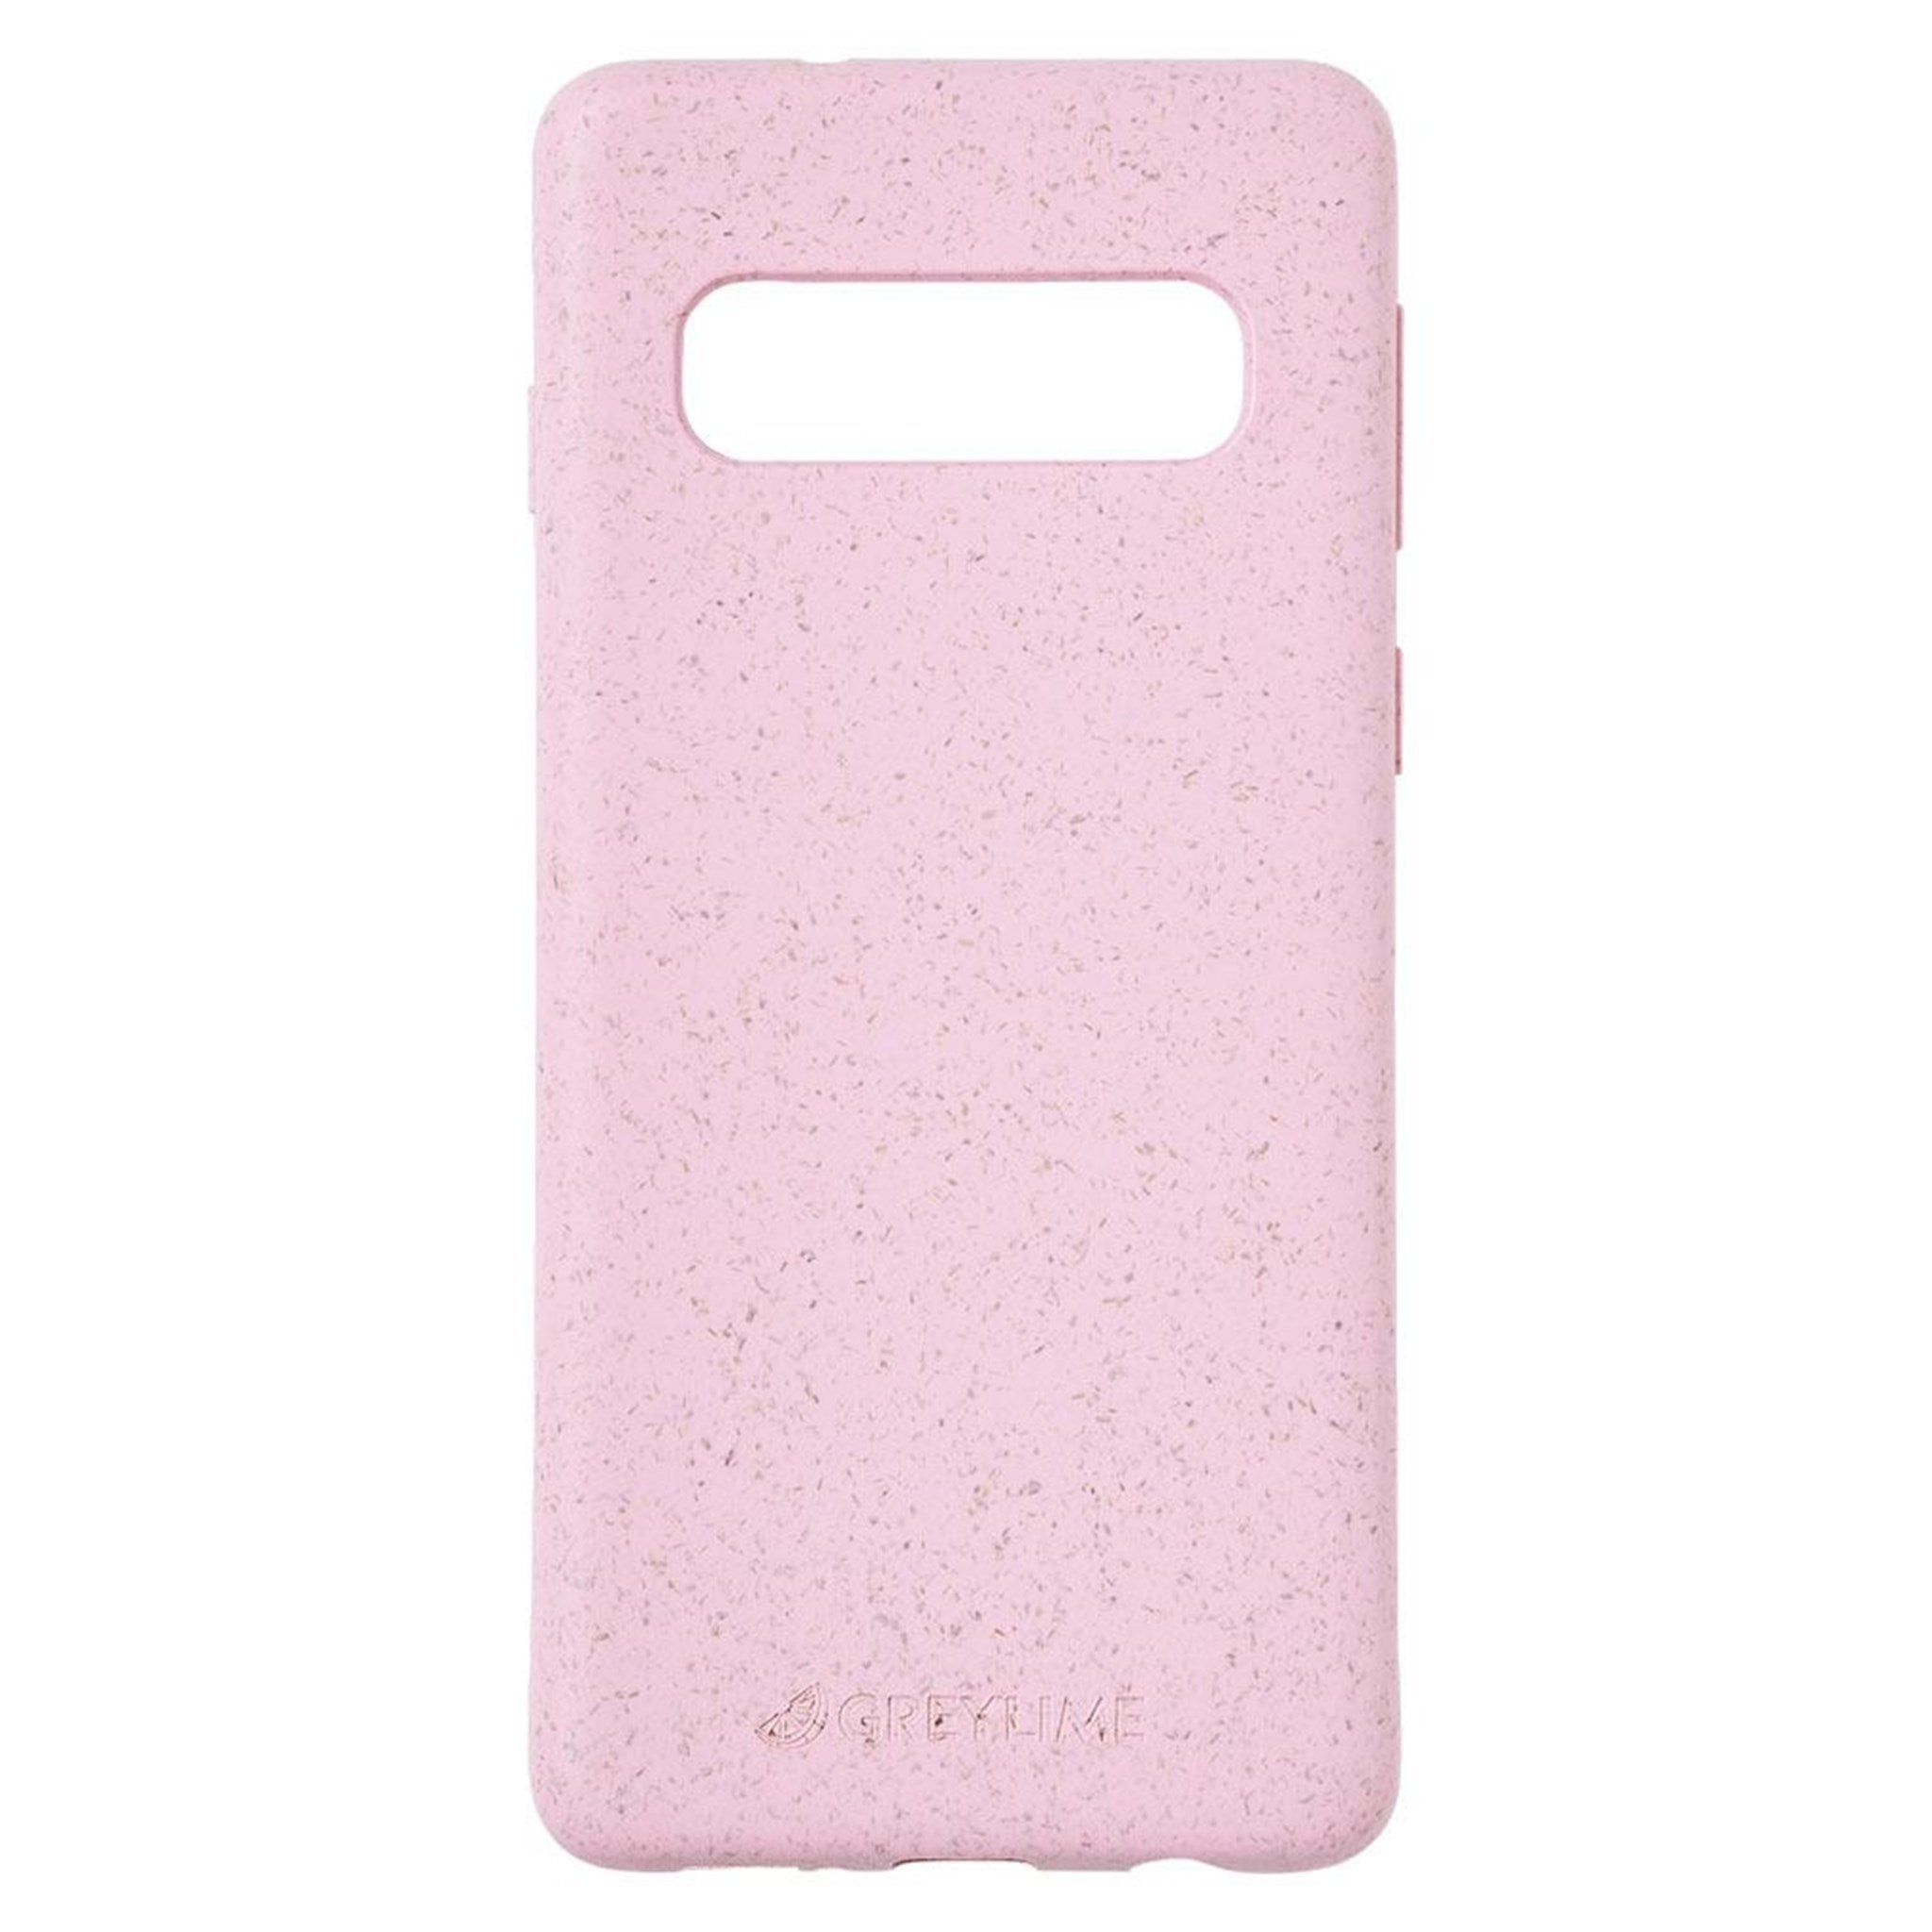 Billede af GreyLime Samsung Galaxy S10+ miljøvenligt cover, Pink hos Balar